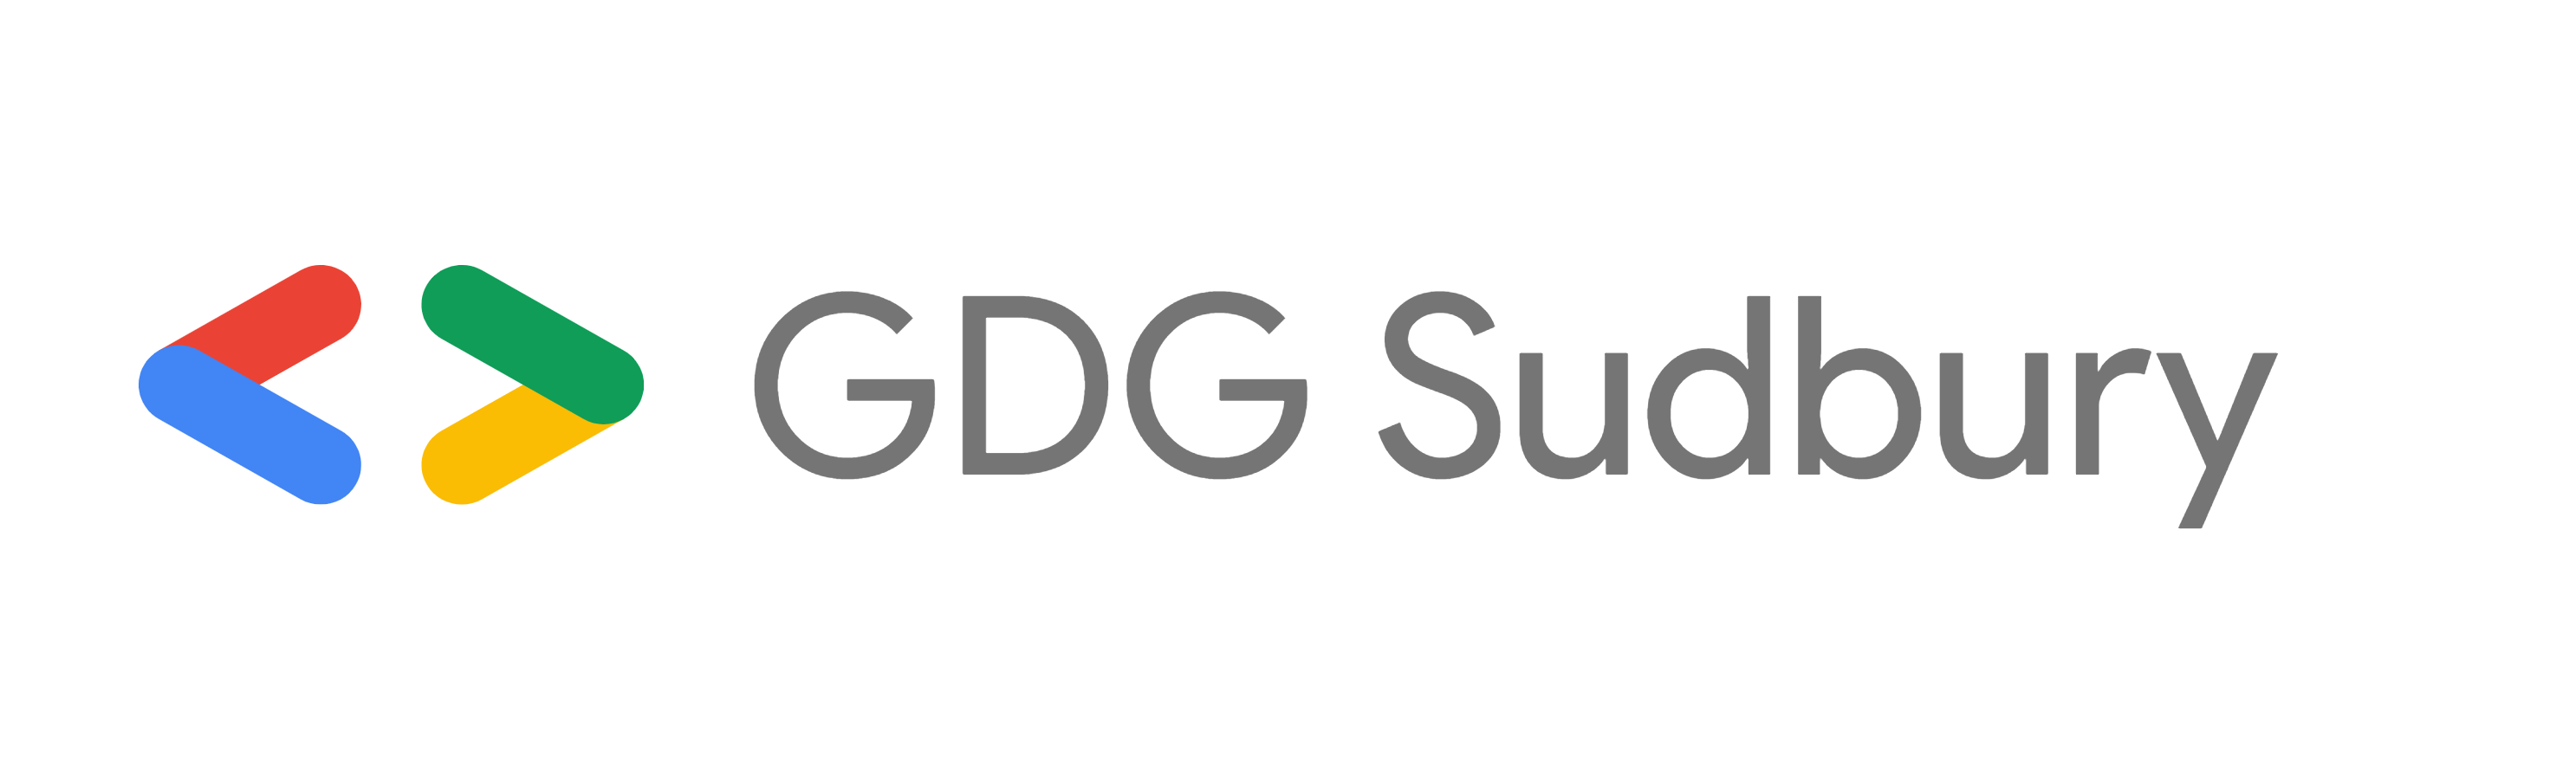 GDG Sudbury Logo